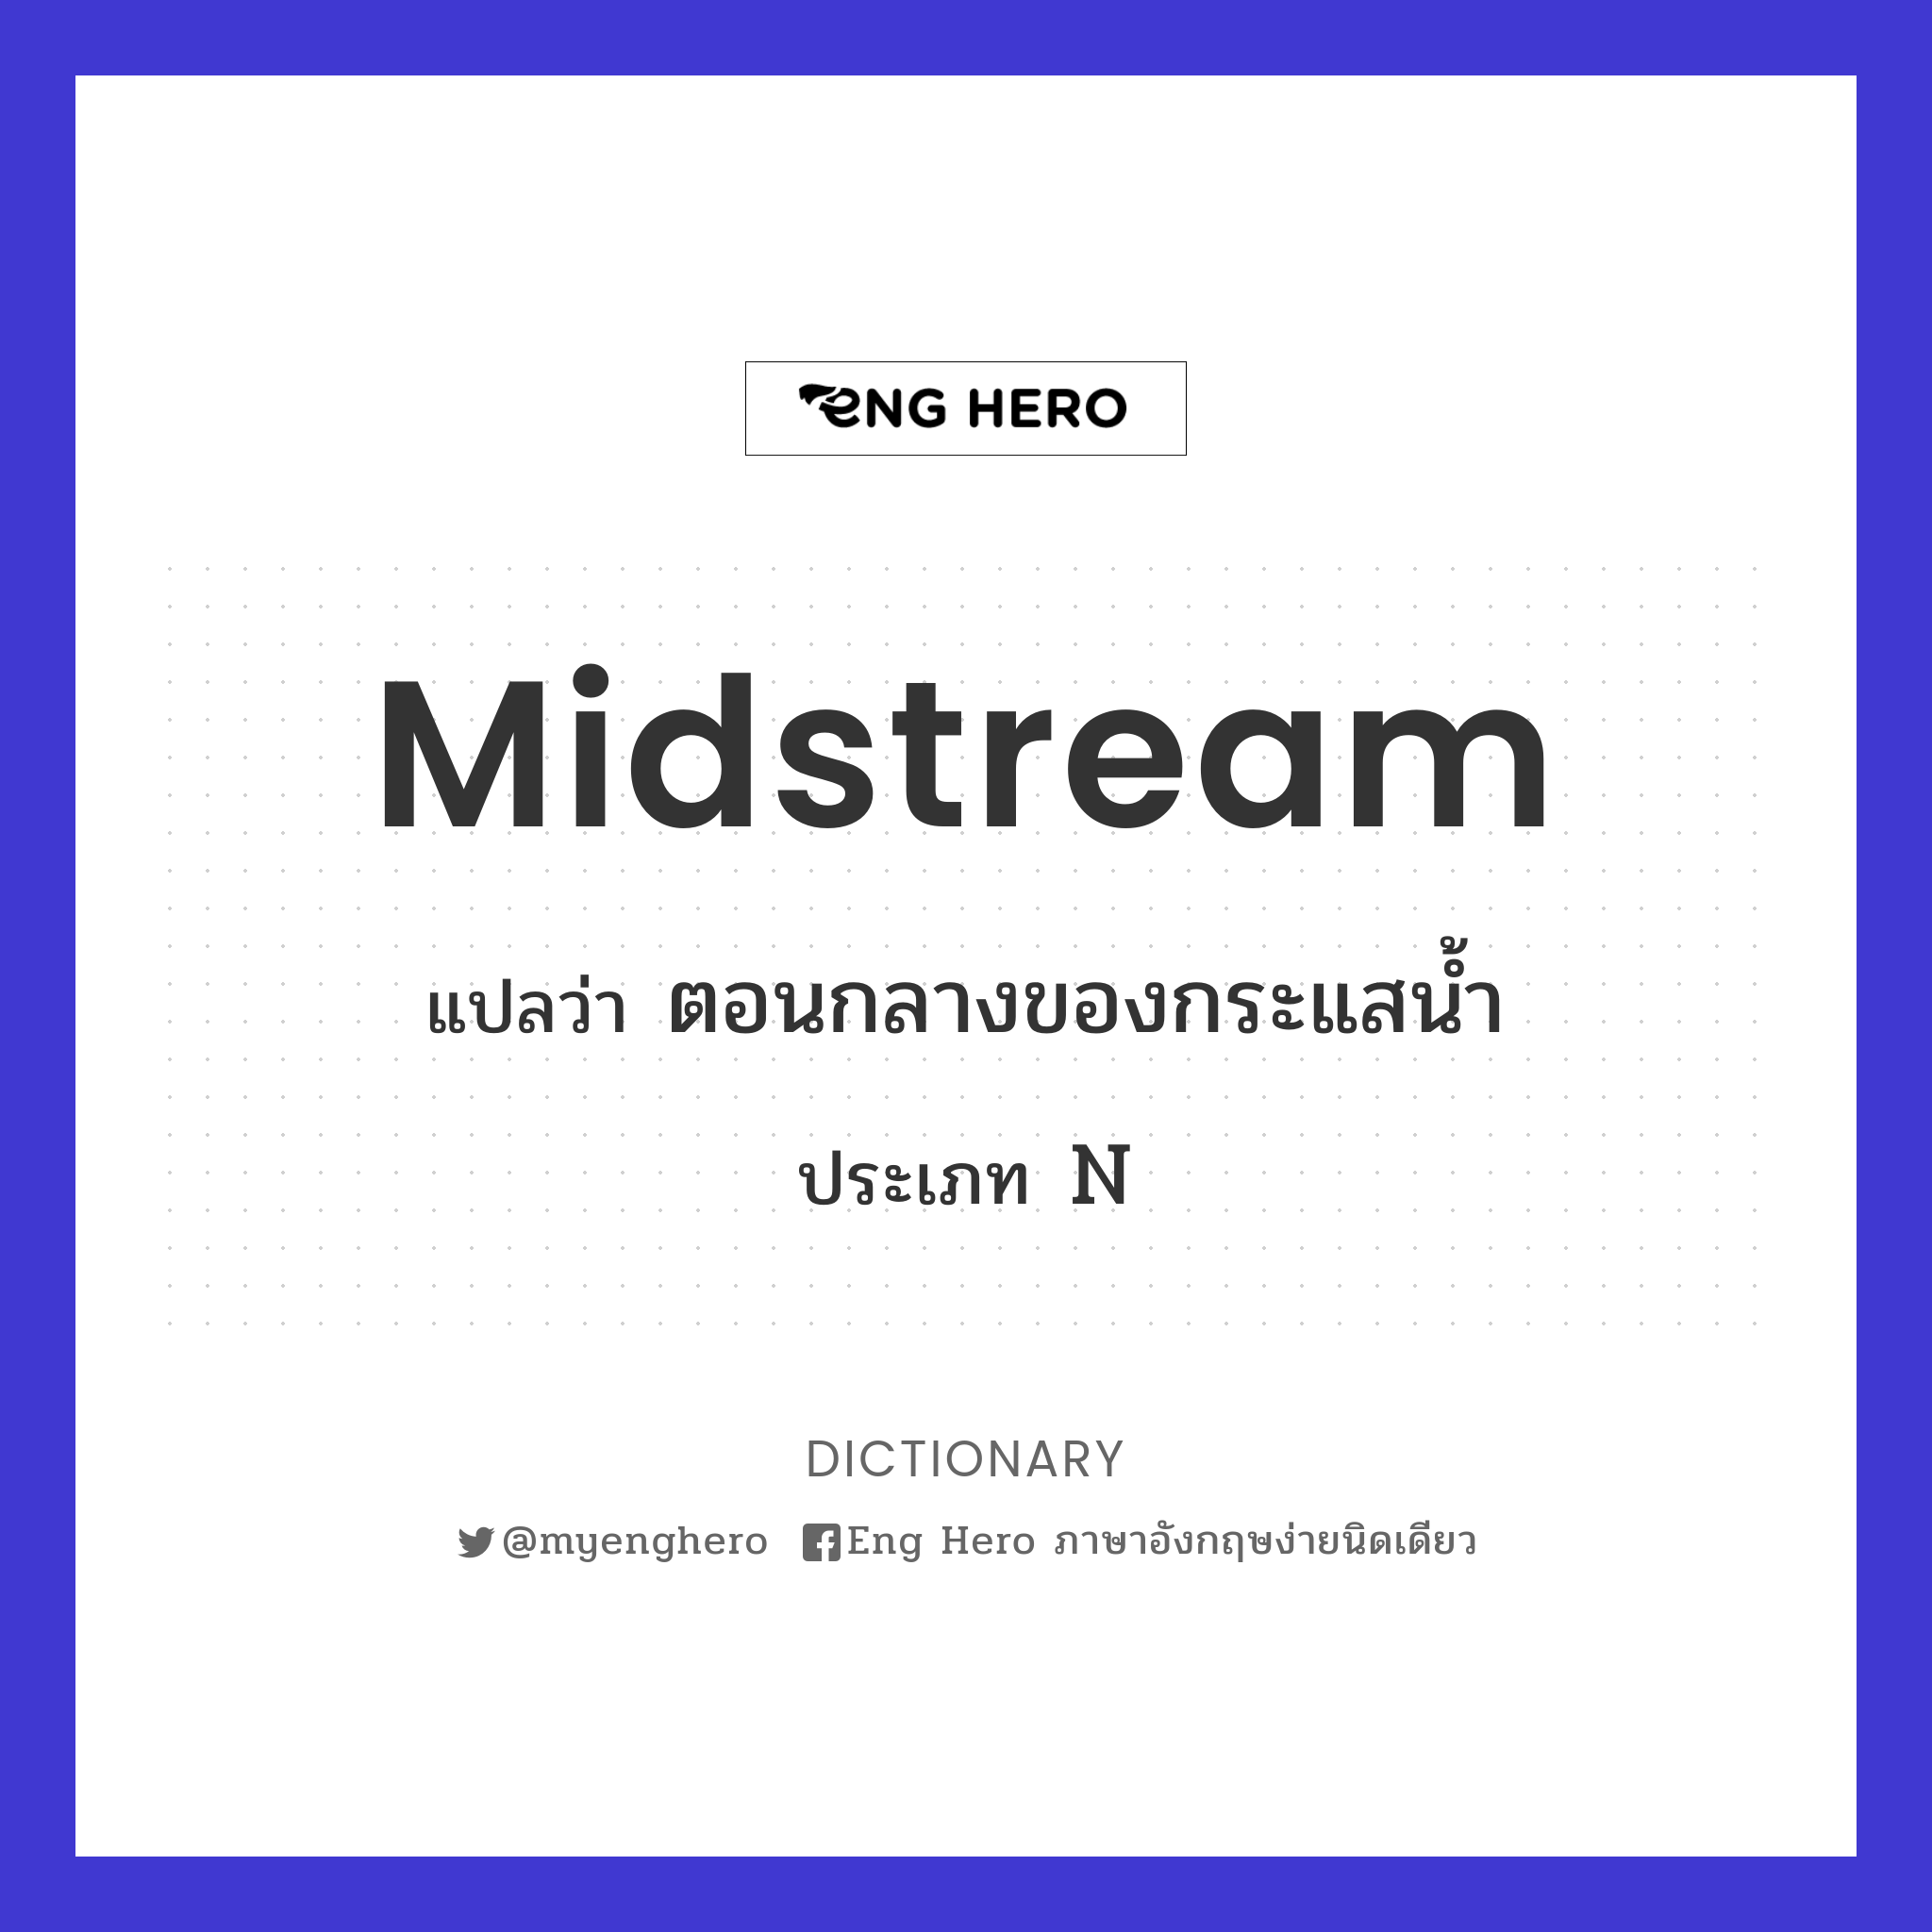 midstream